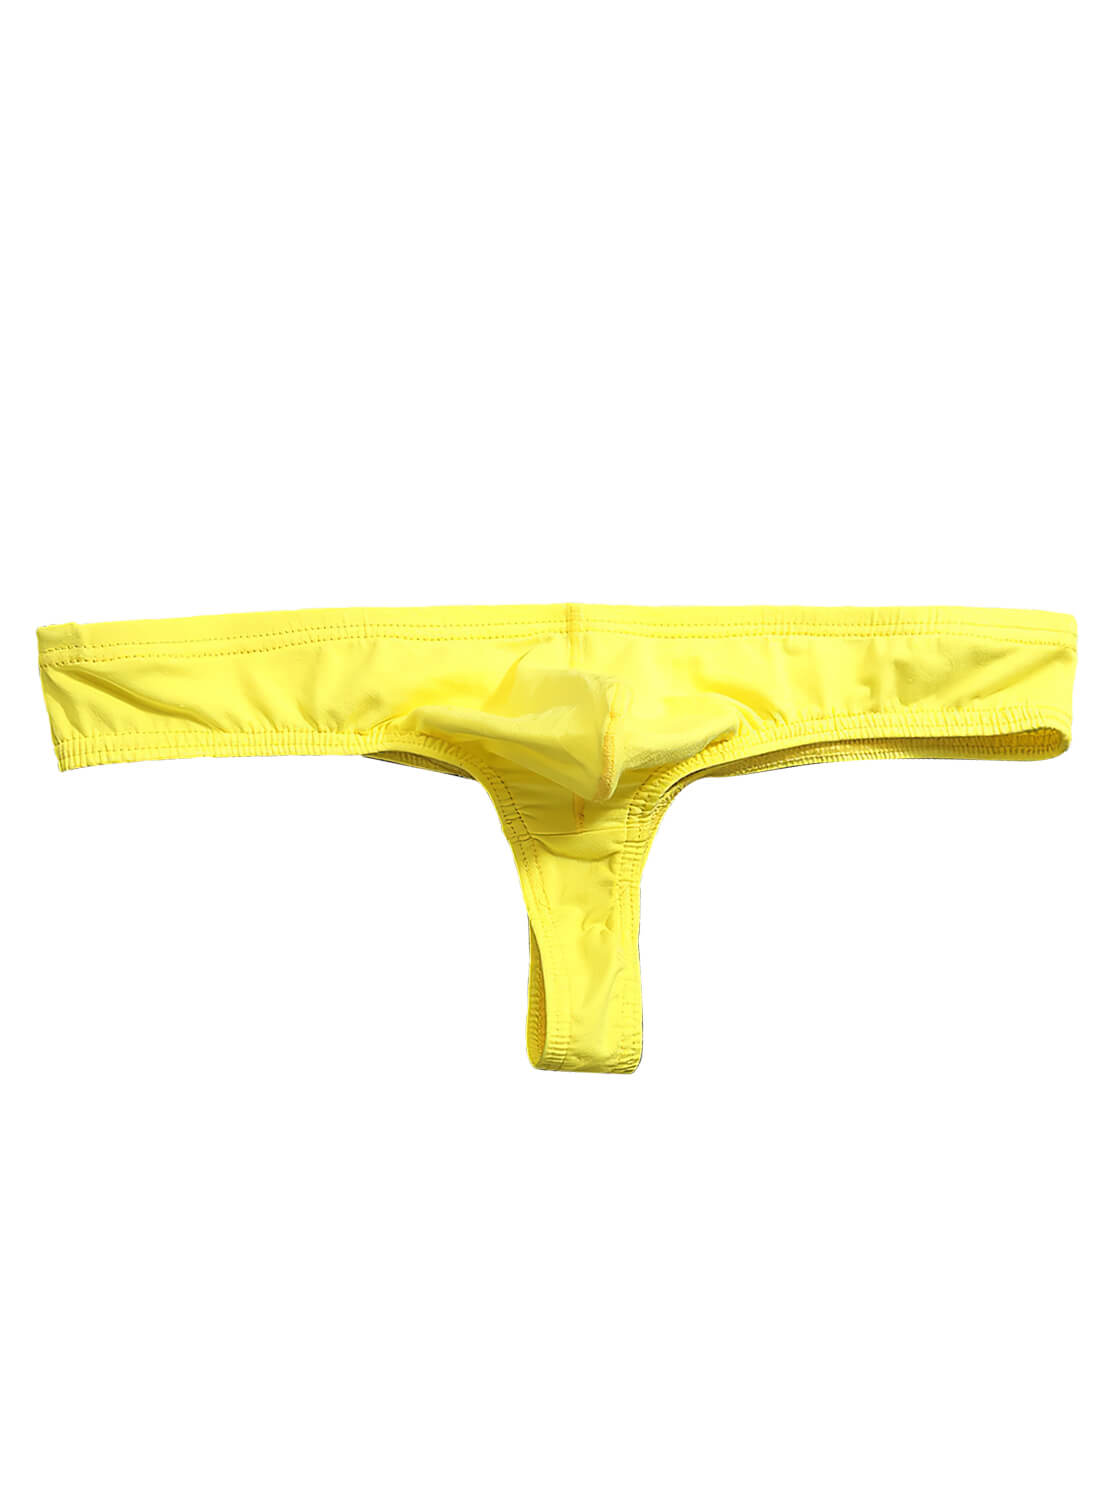 Men's Underwear, Cotton Briefs Underwear for Male